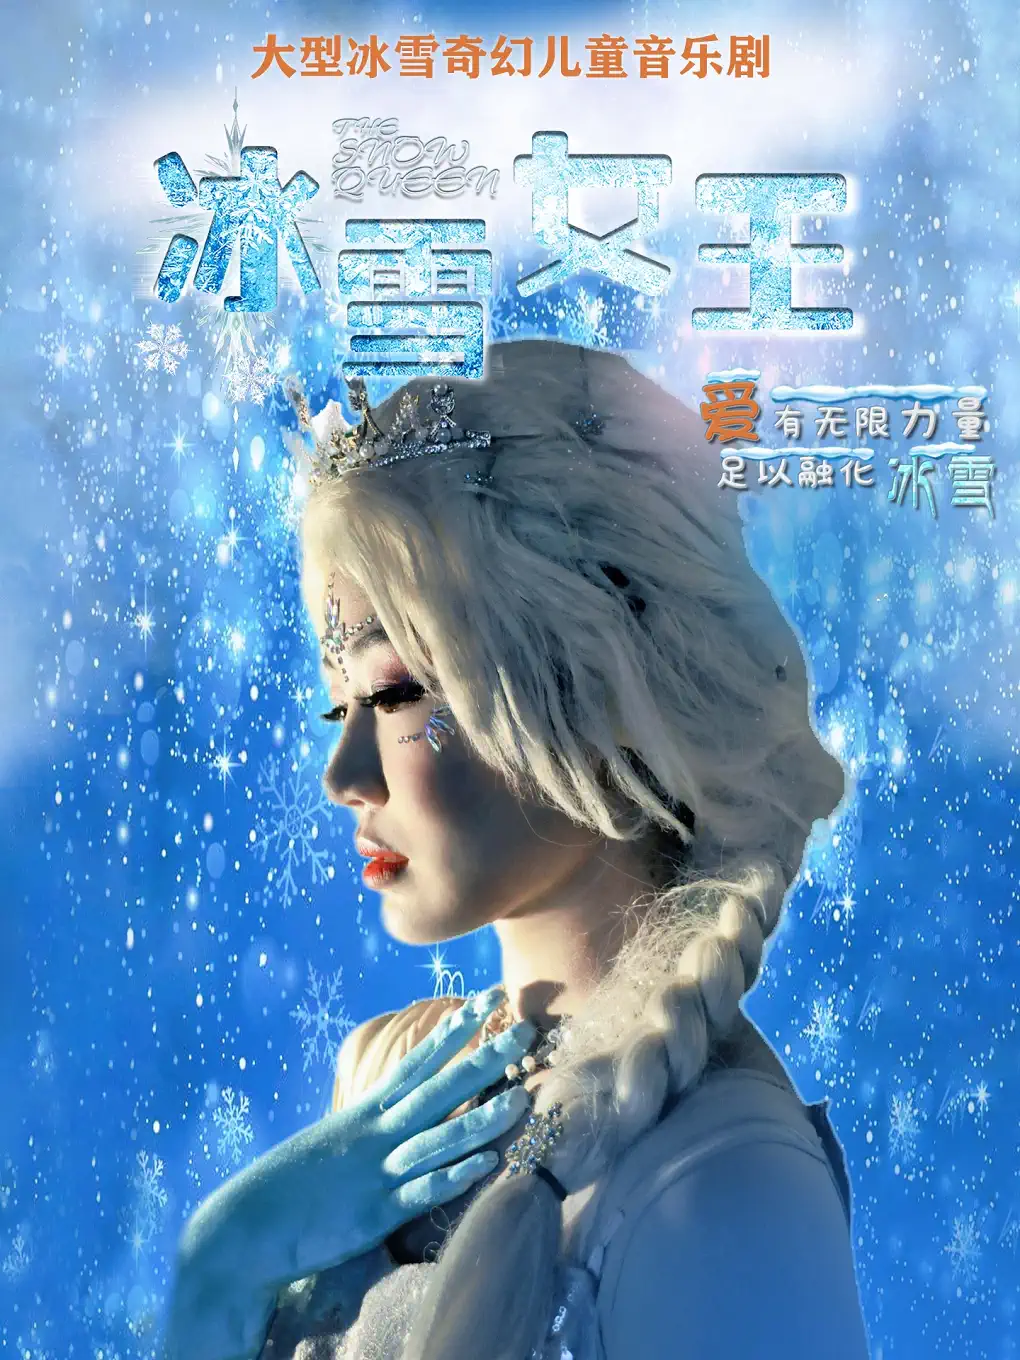 【重庆】 【茶园站】大型冰雪奇幻儿童音乐剧《冰雪女王》